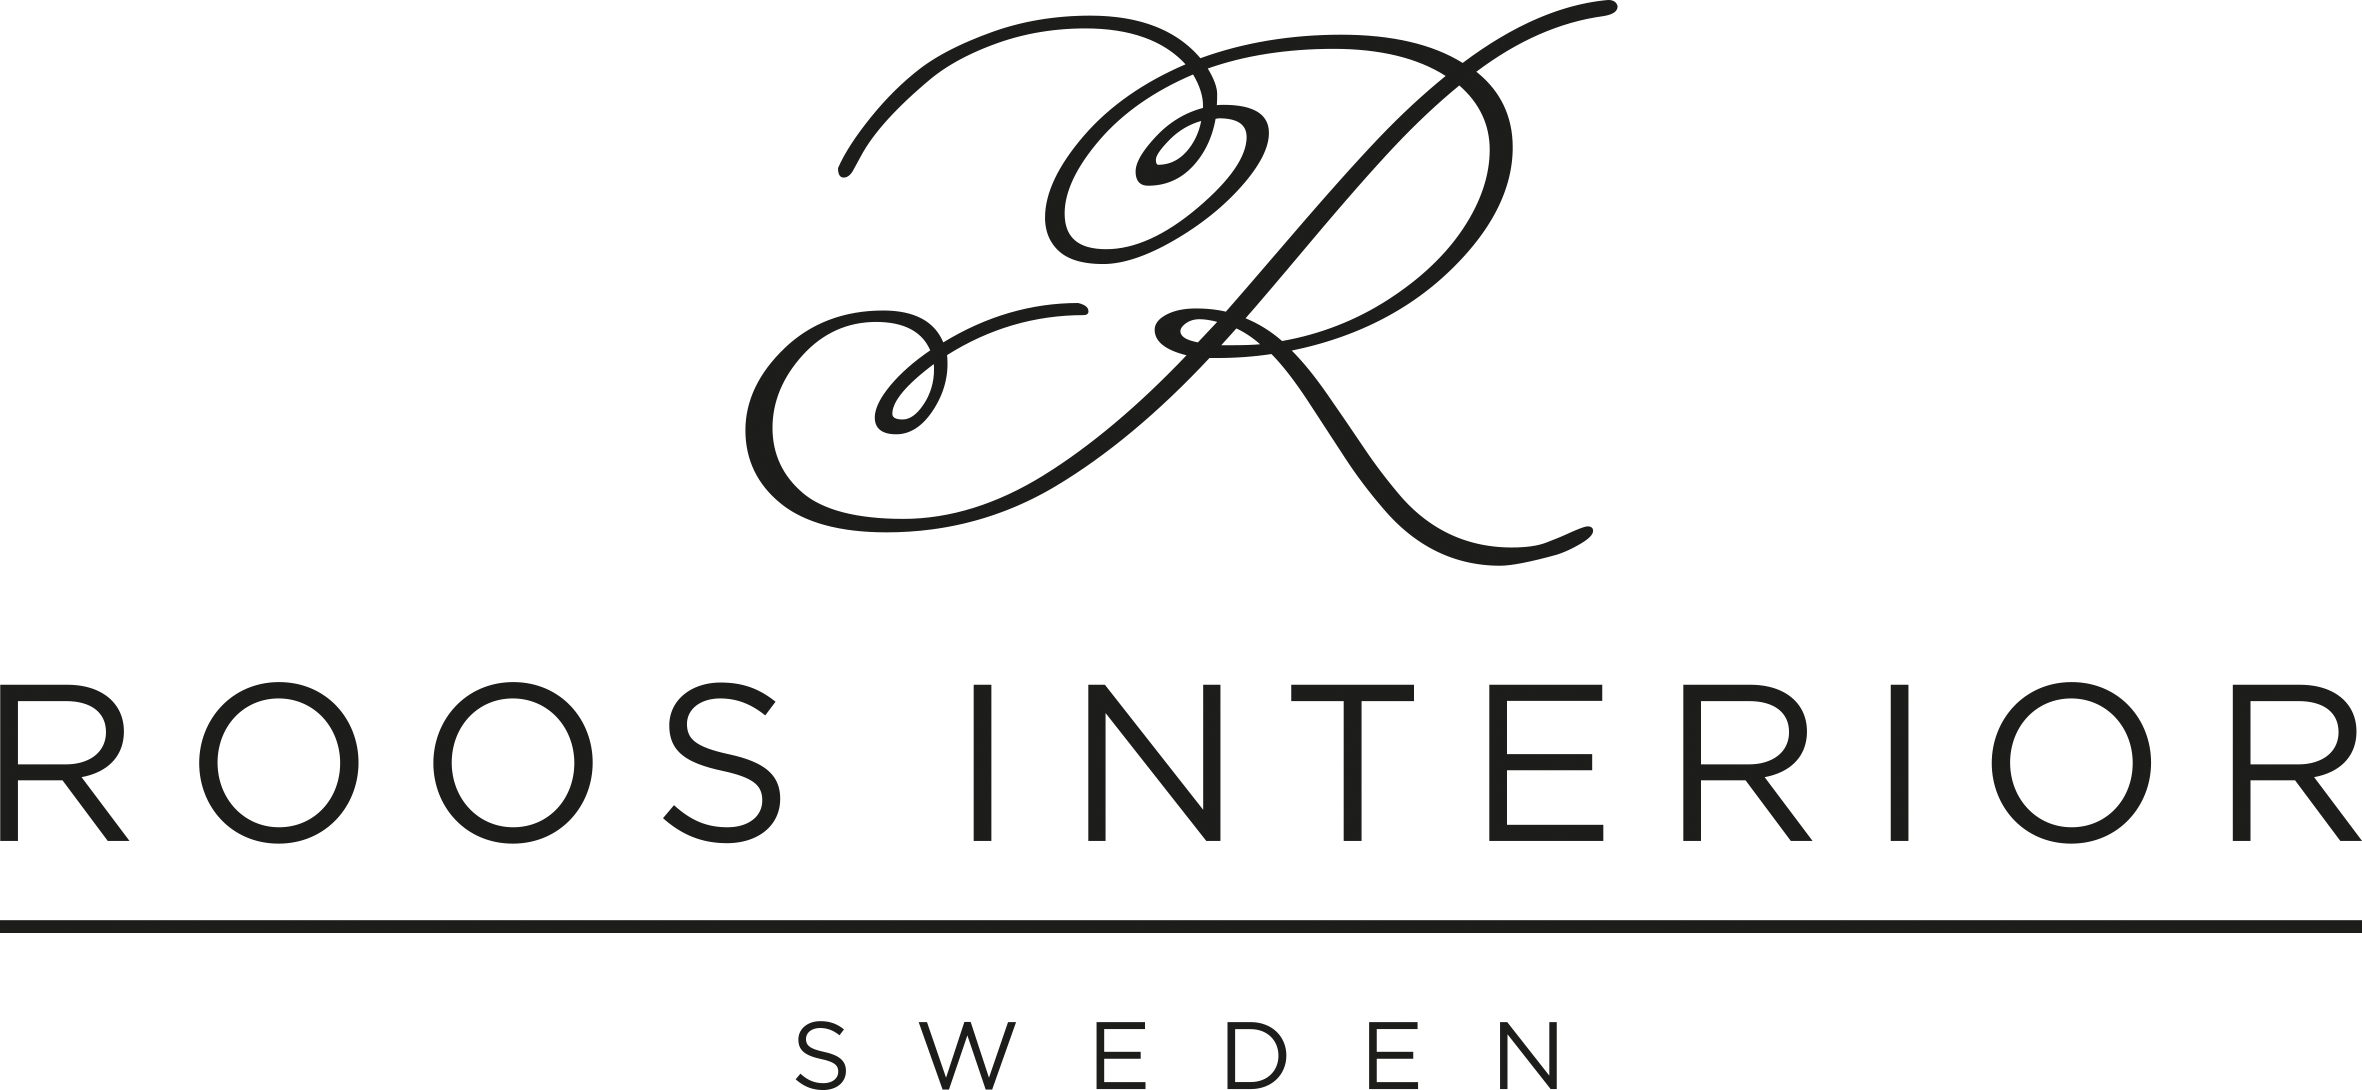 R ROOS INTERIOR SWEDEN